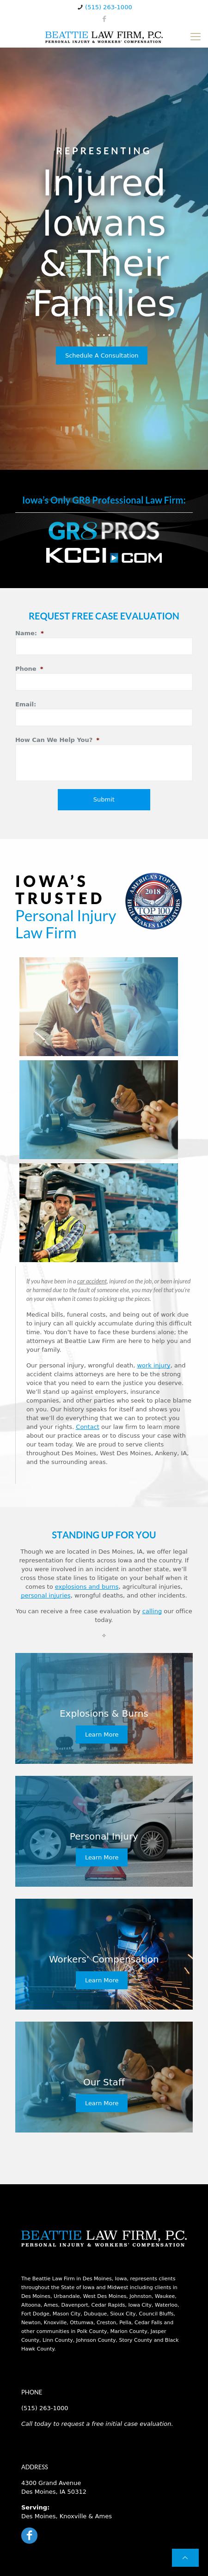 Beattie Law Firm, P.C. - Des Moines IA Lawyers